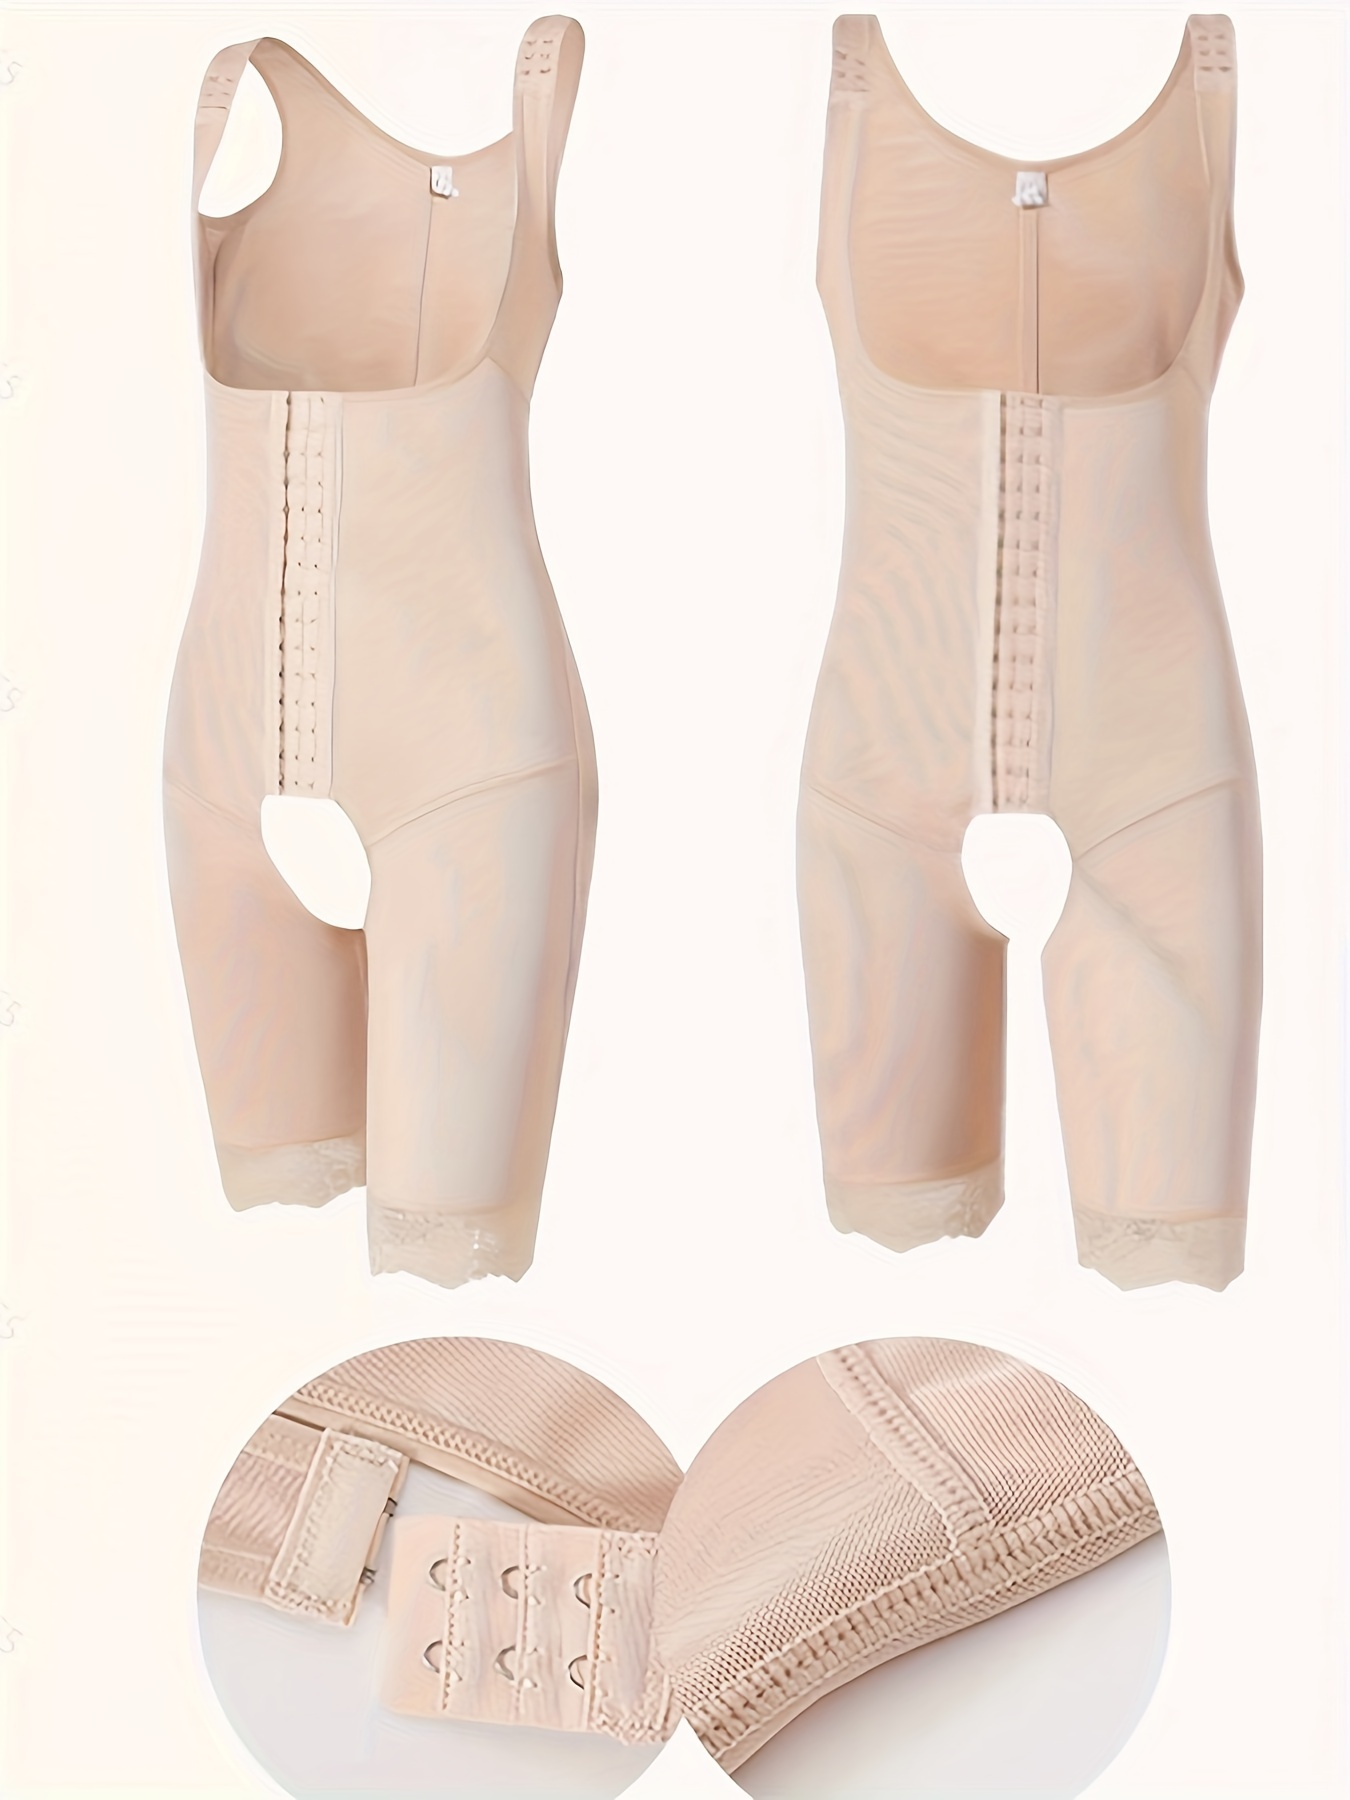 Shop Generic Fajas Colombianas Body Shapewear Women Waist Trainer Tummy  Control Seamless Underwear Modeling Strap Binders Bodysuit Online